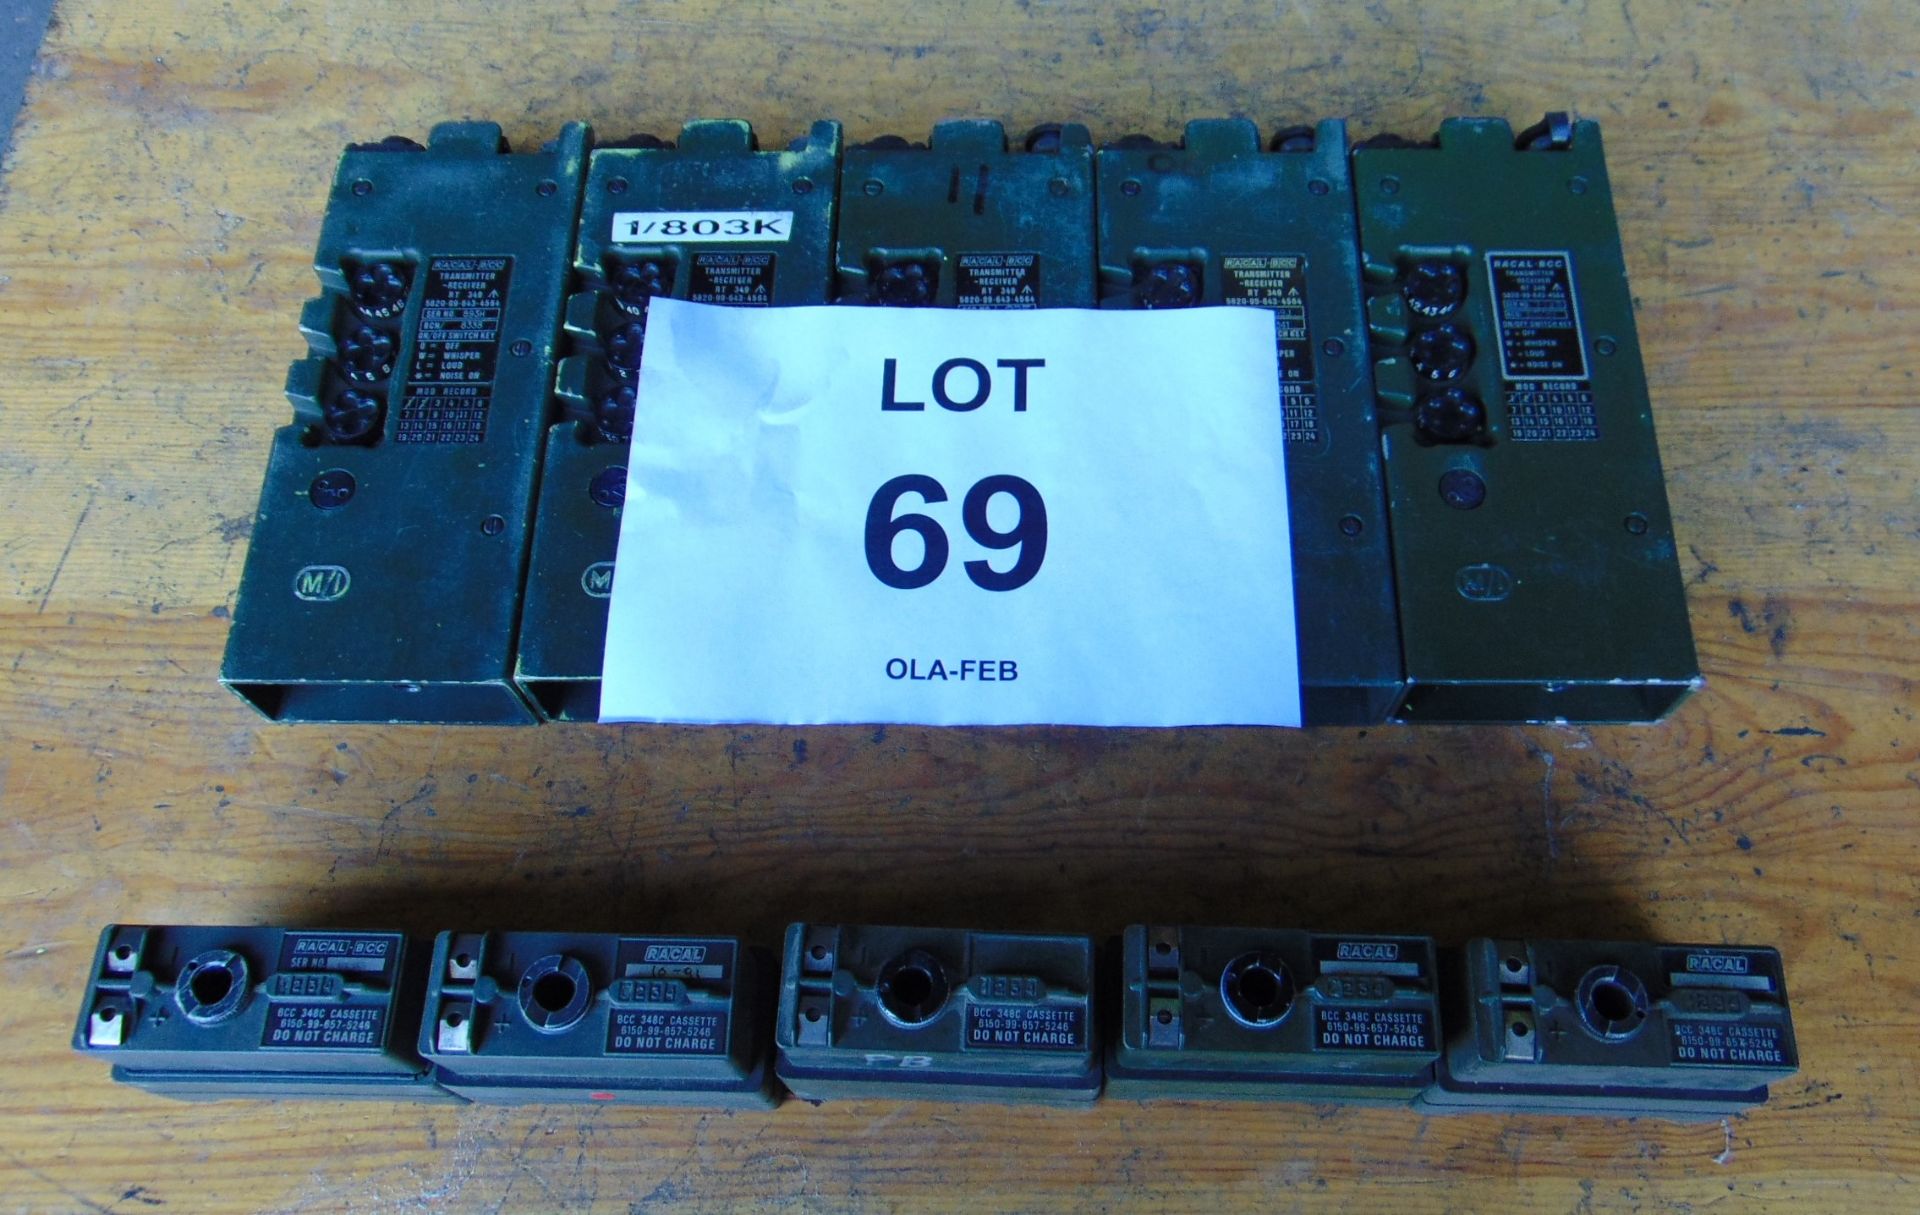 5 x UK / RT 349 Transmitter Receiver as shown